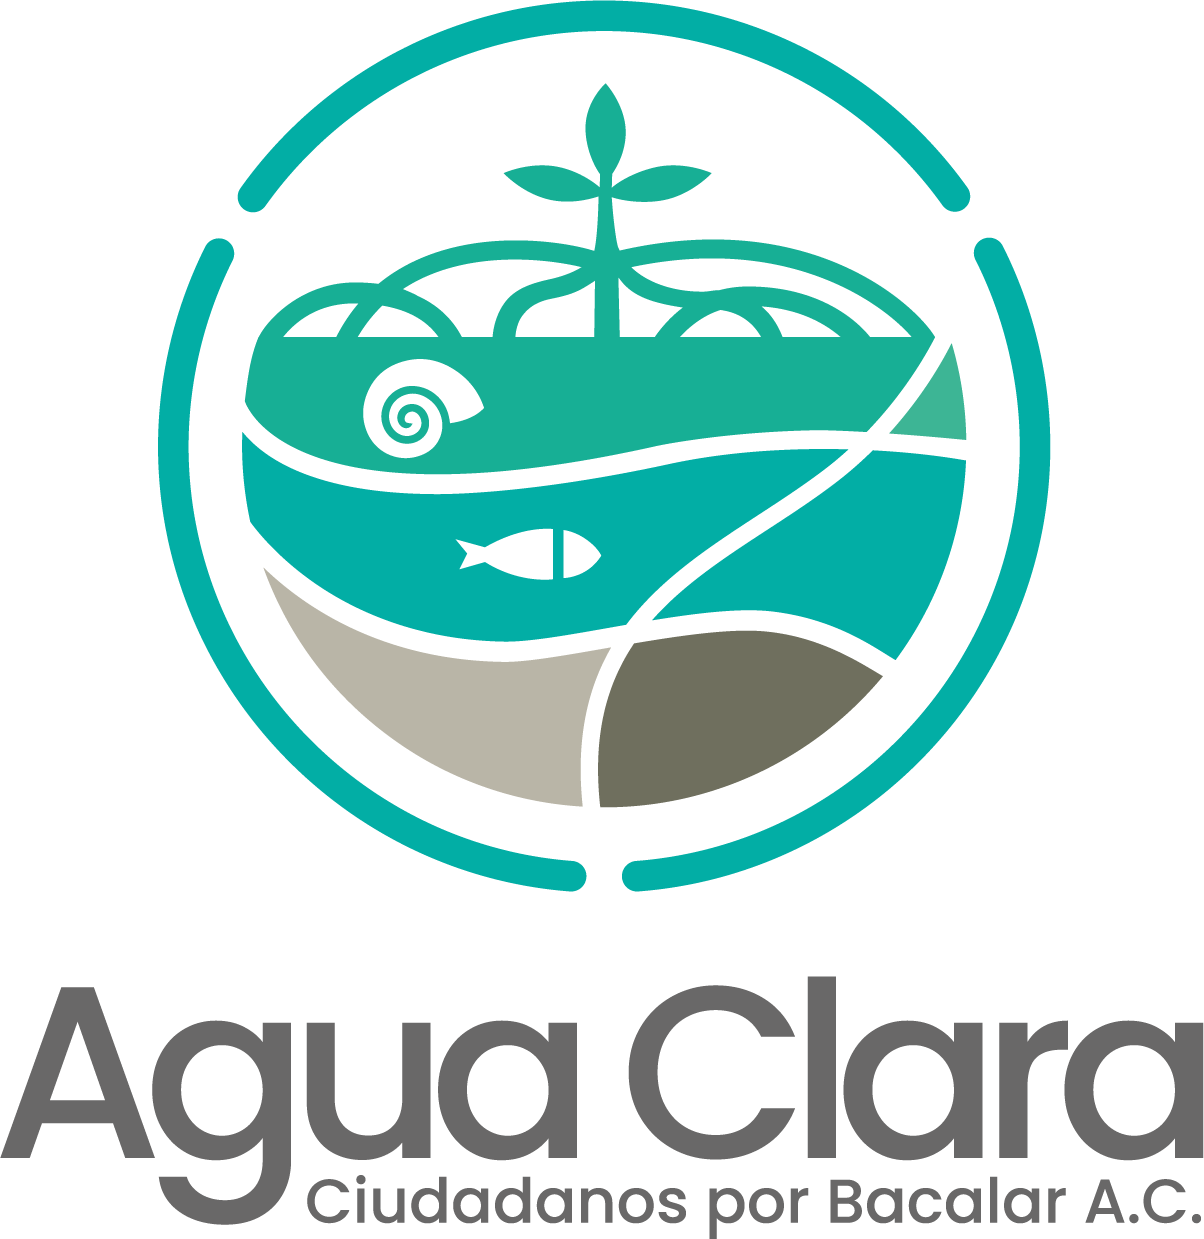 Agua Clara Ciudadanos por Bacalar A.C.